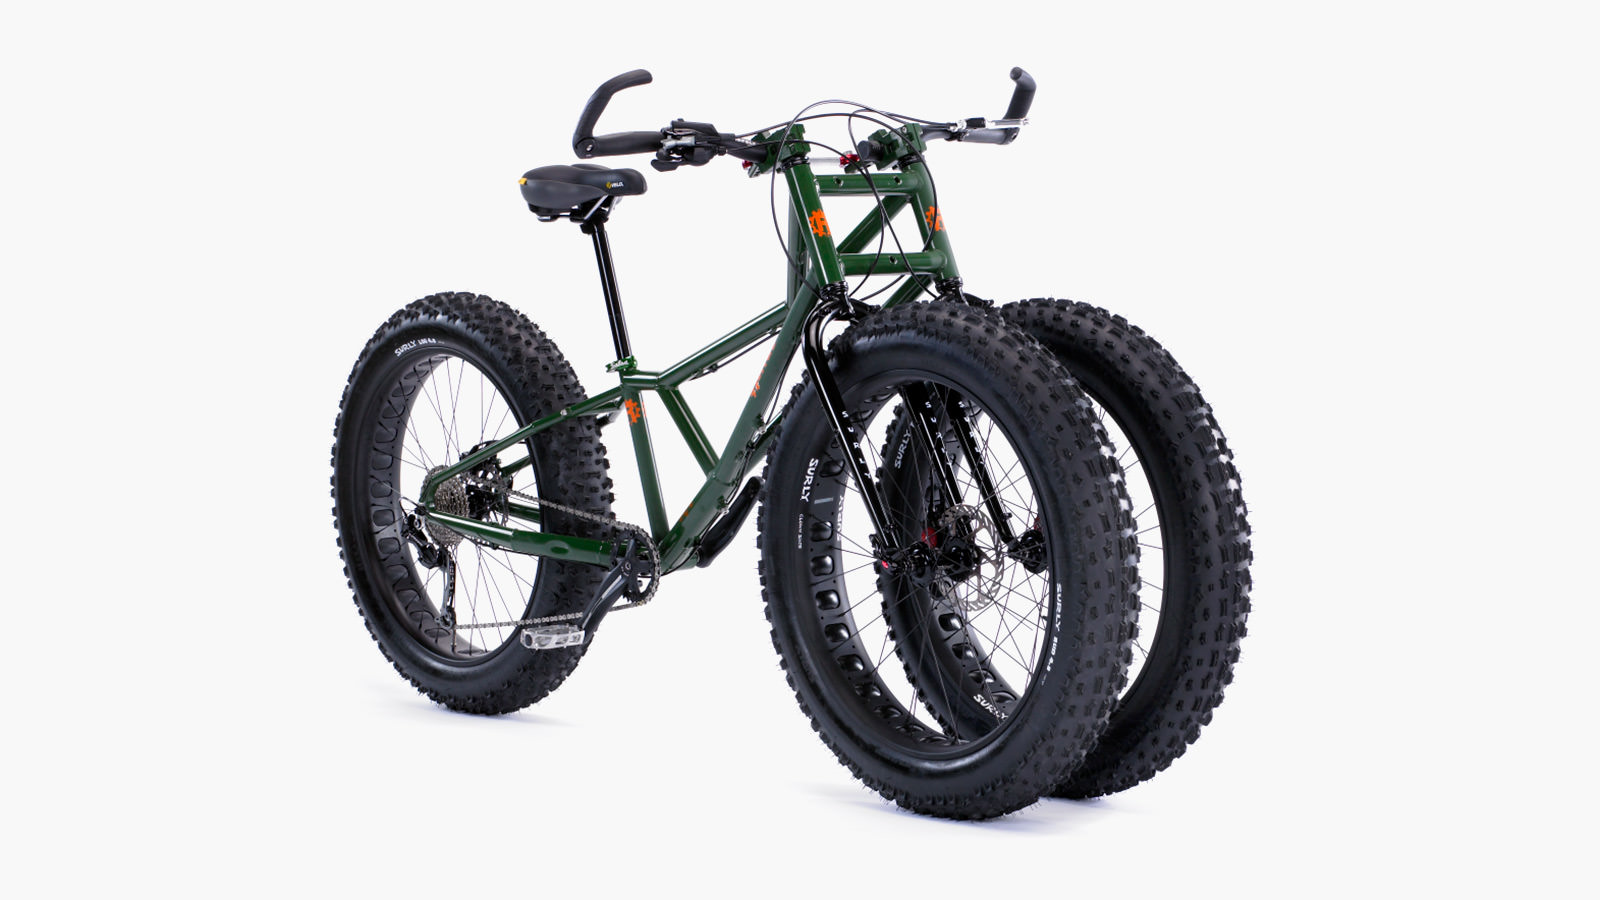 Колесо на простой велосипед. Велосипед Rungu Juggernaut. Трицикл фэтбайк e-Motions fat Panda 20 (750w 15ah). Трехколесный веловездеход. Трехколесный электро фэтбайк.